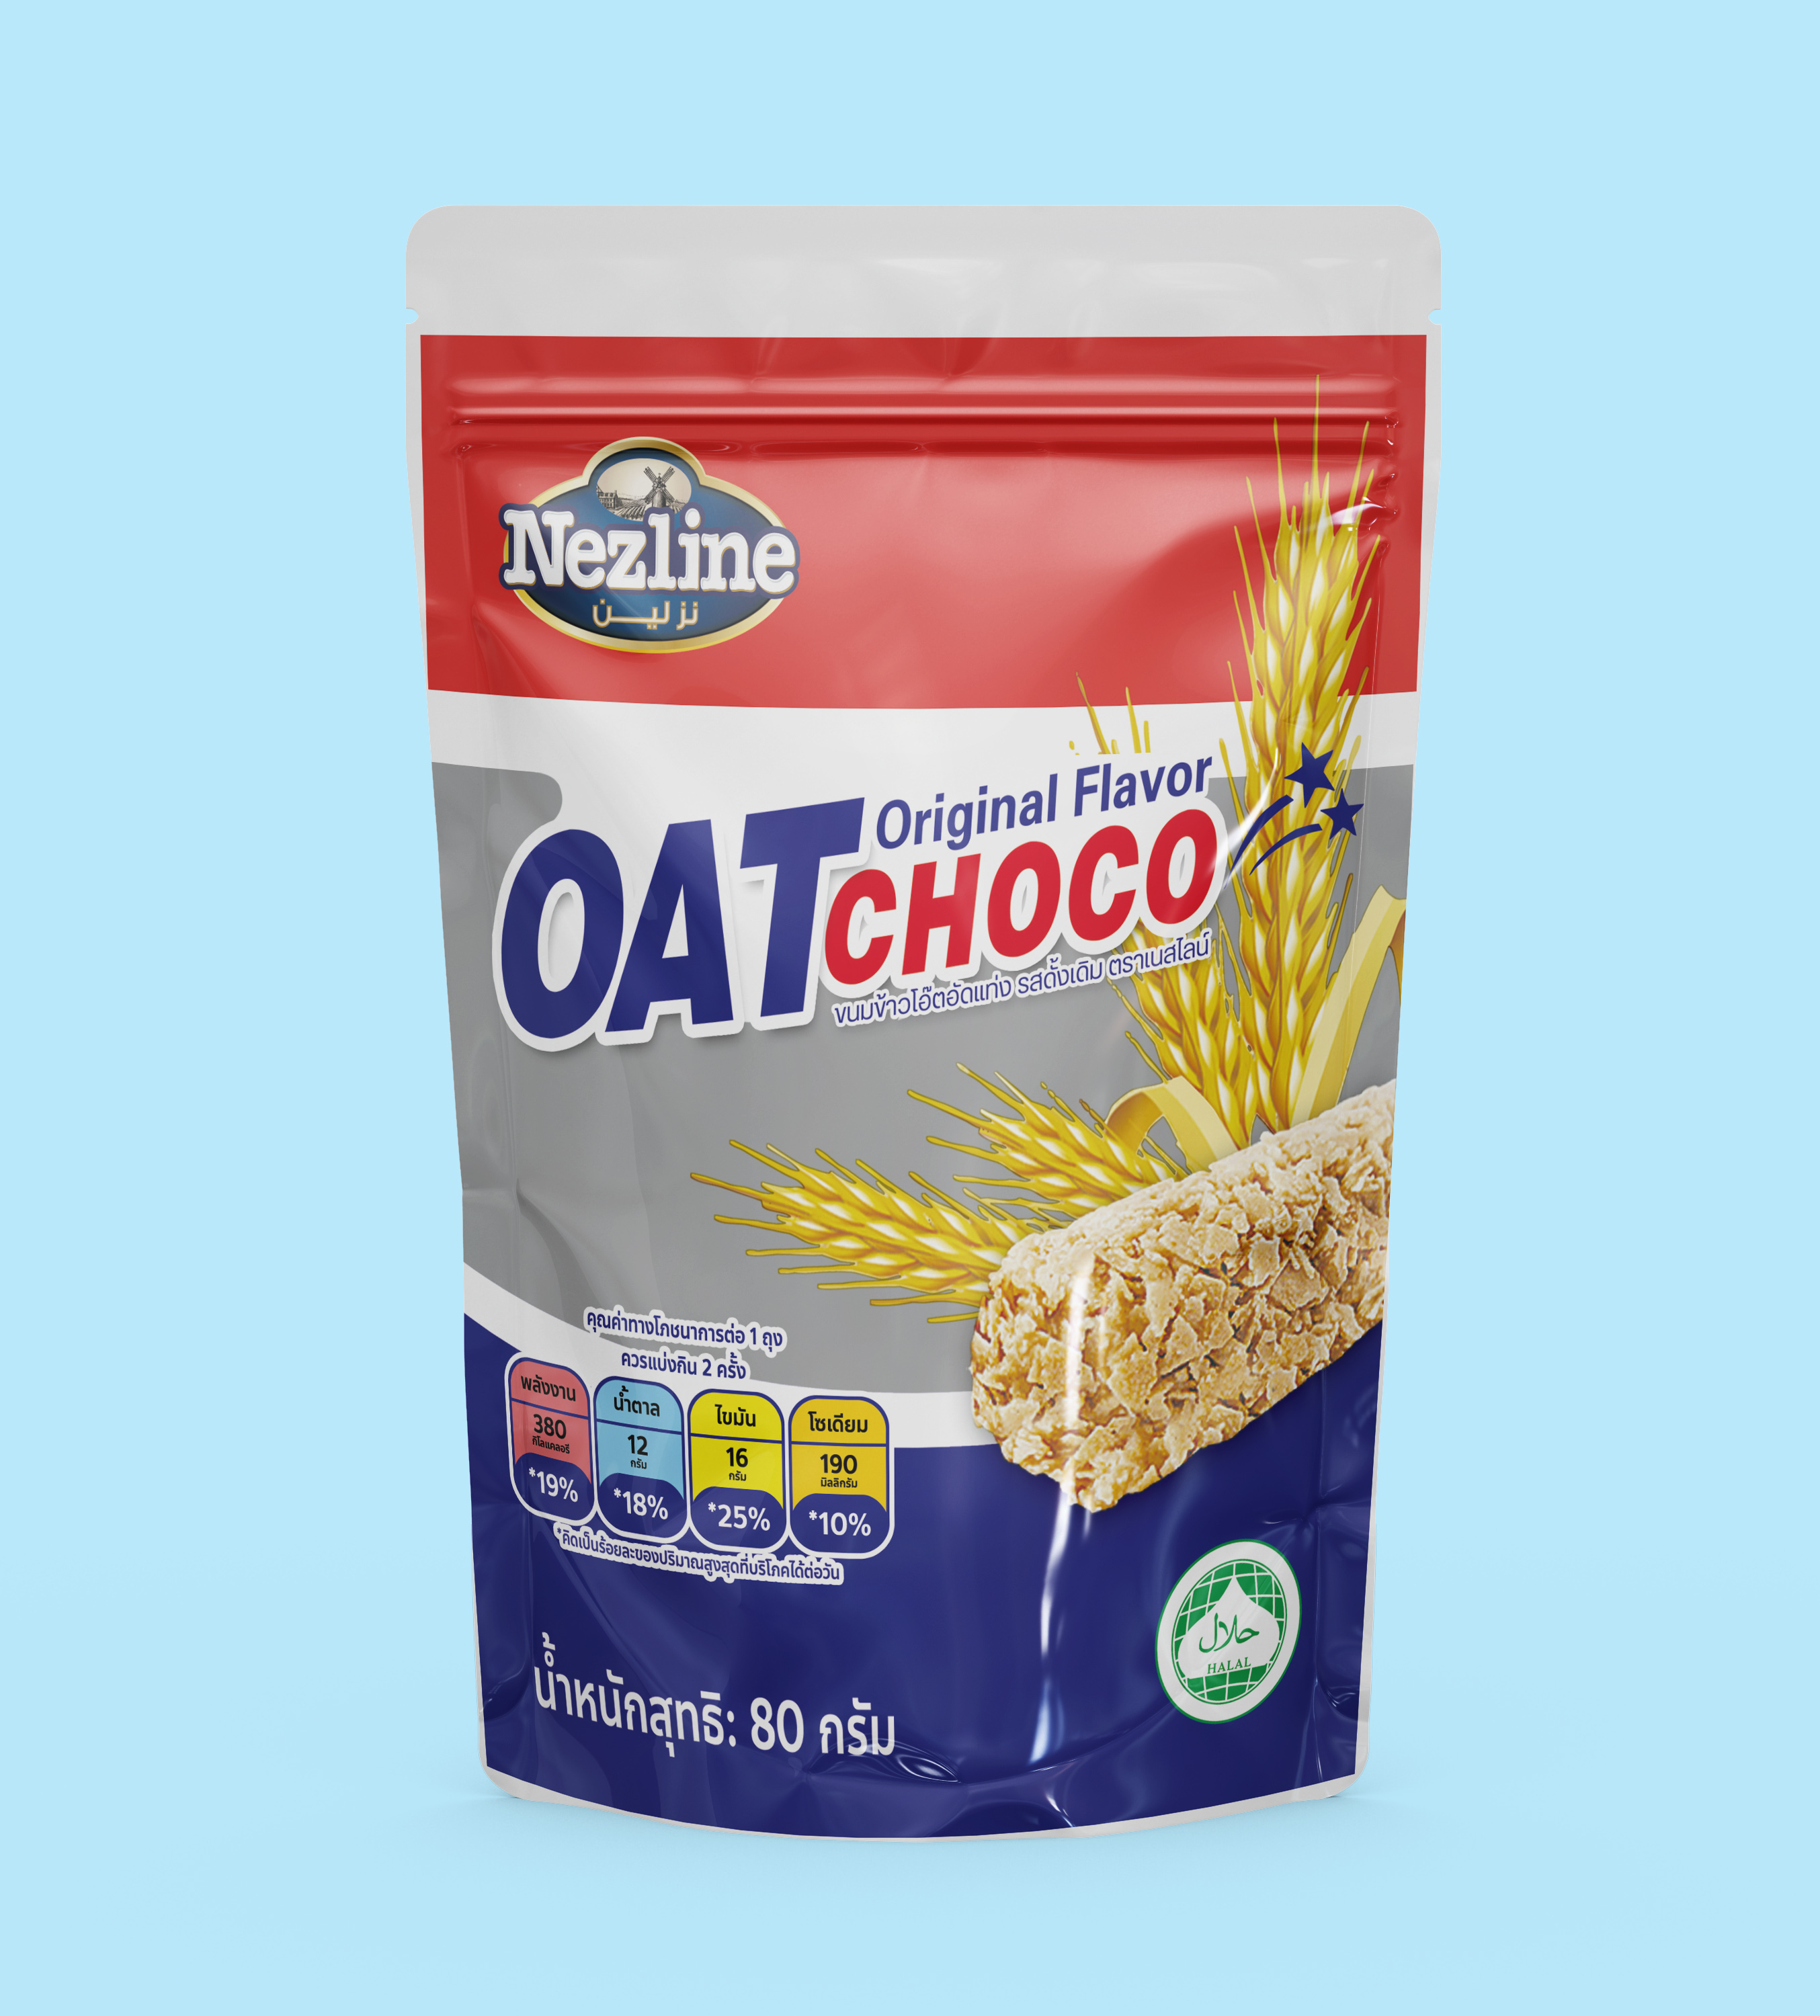 Oat choco ห่อเล็ก รสนม ปริมาณ 80 กรัม เหมาะกับคนที่รักสุขภาพ อร่อย ครบรส ตลาดกิมหยงมาเองจ้า Oat Choco Original